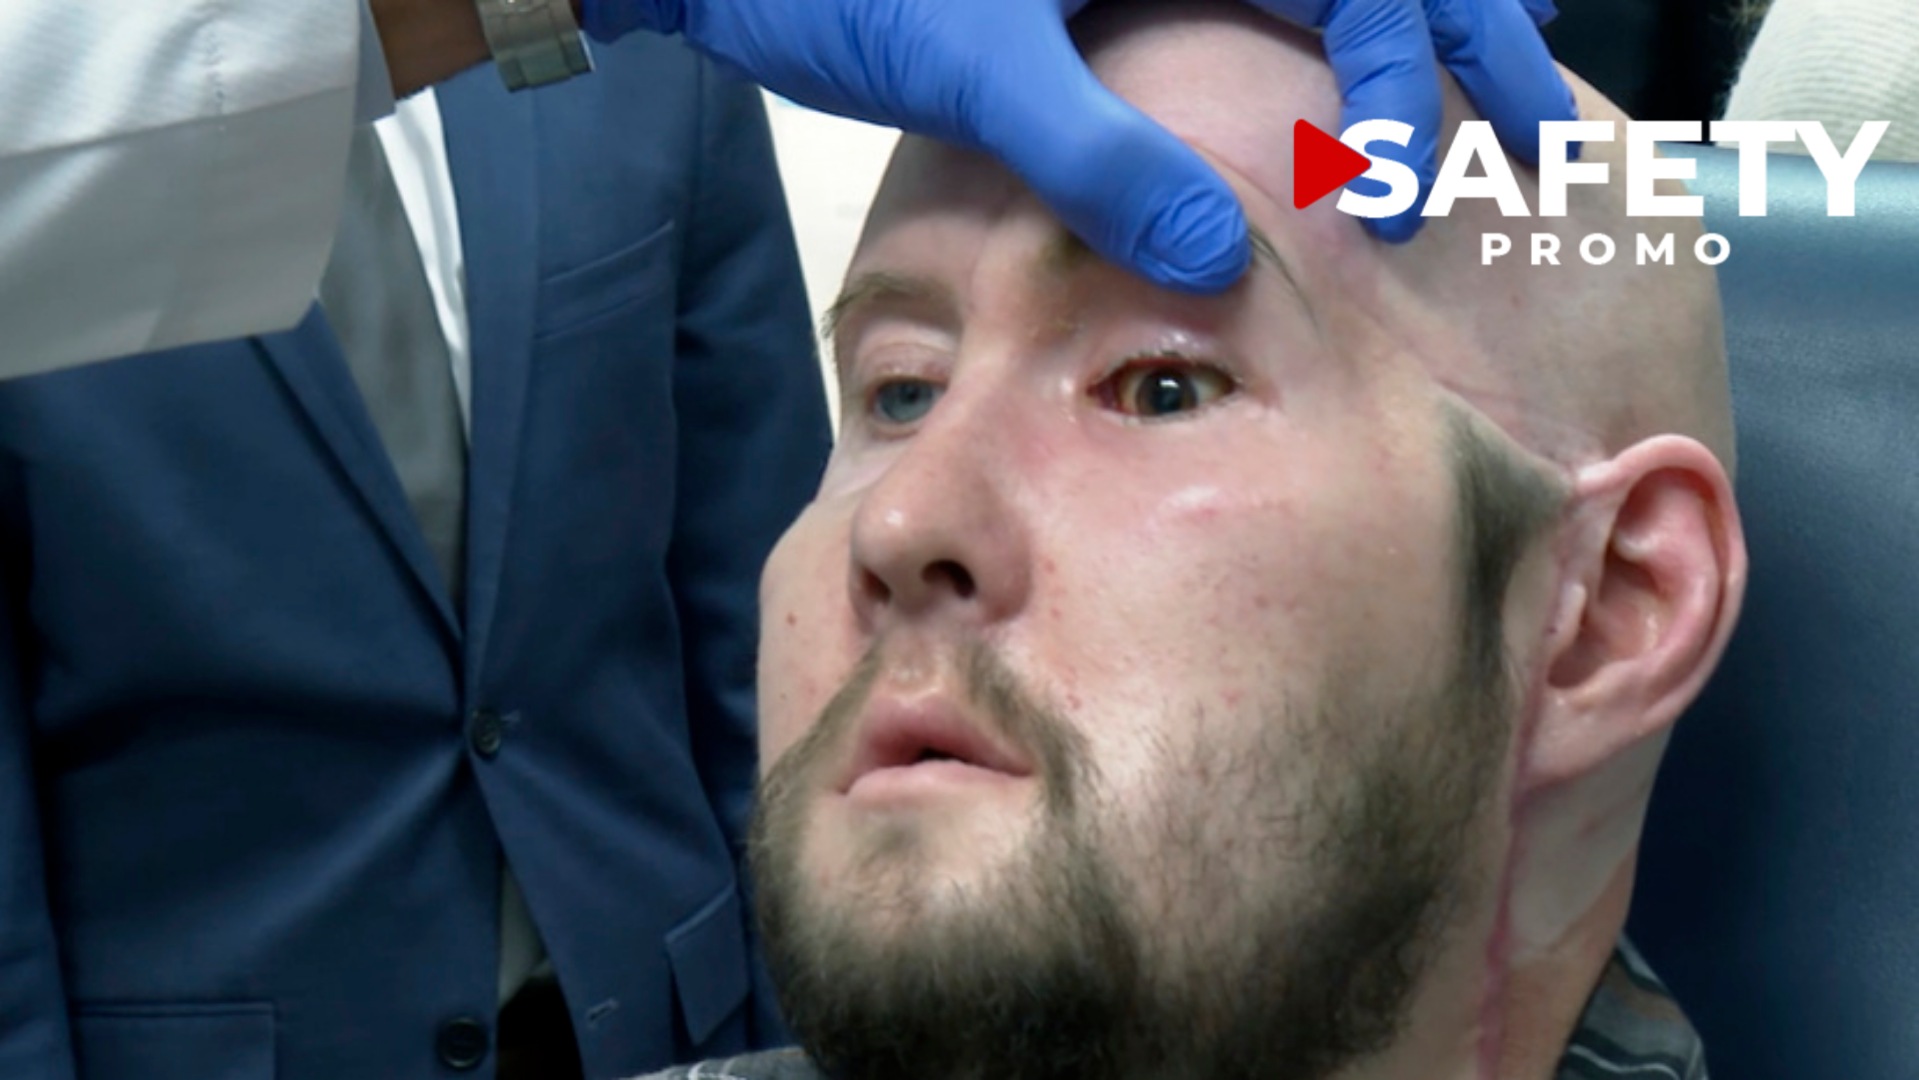 États-Unis : un patient a reçu la greffe d’un œil complet, une première historique